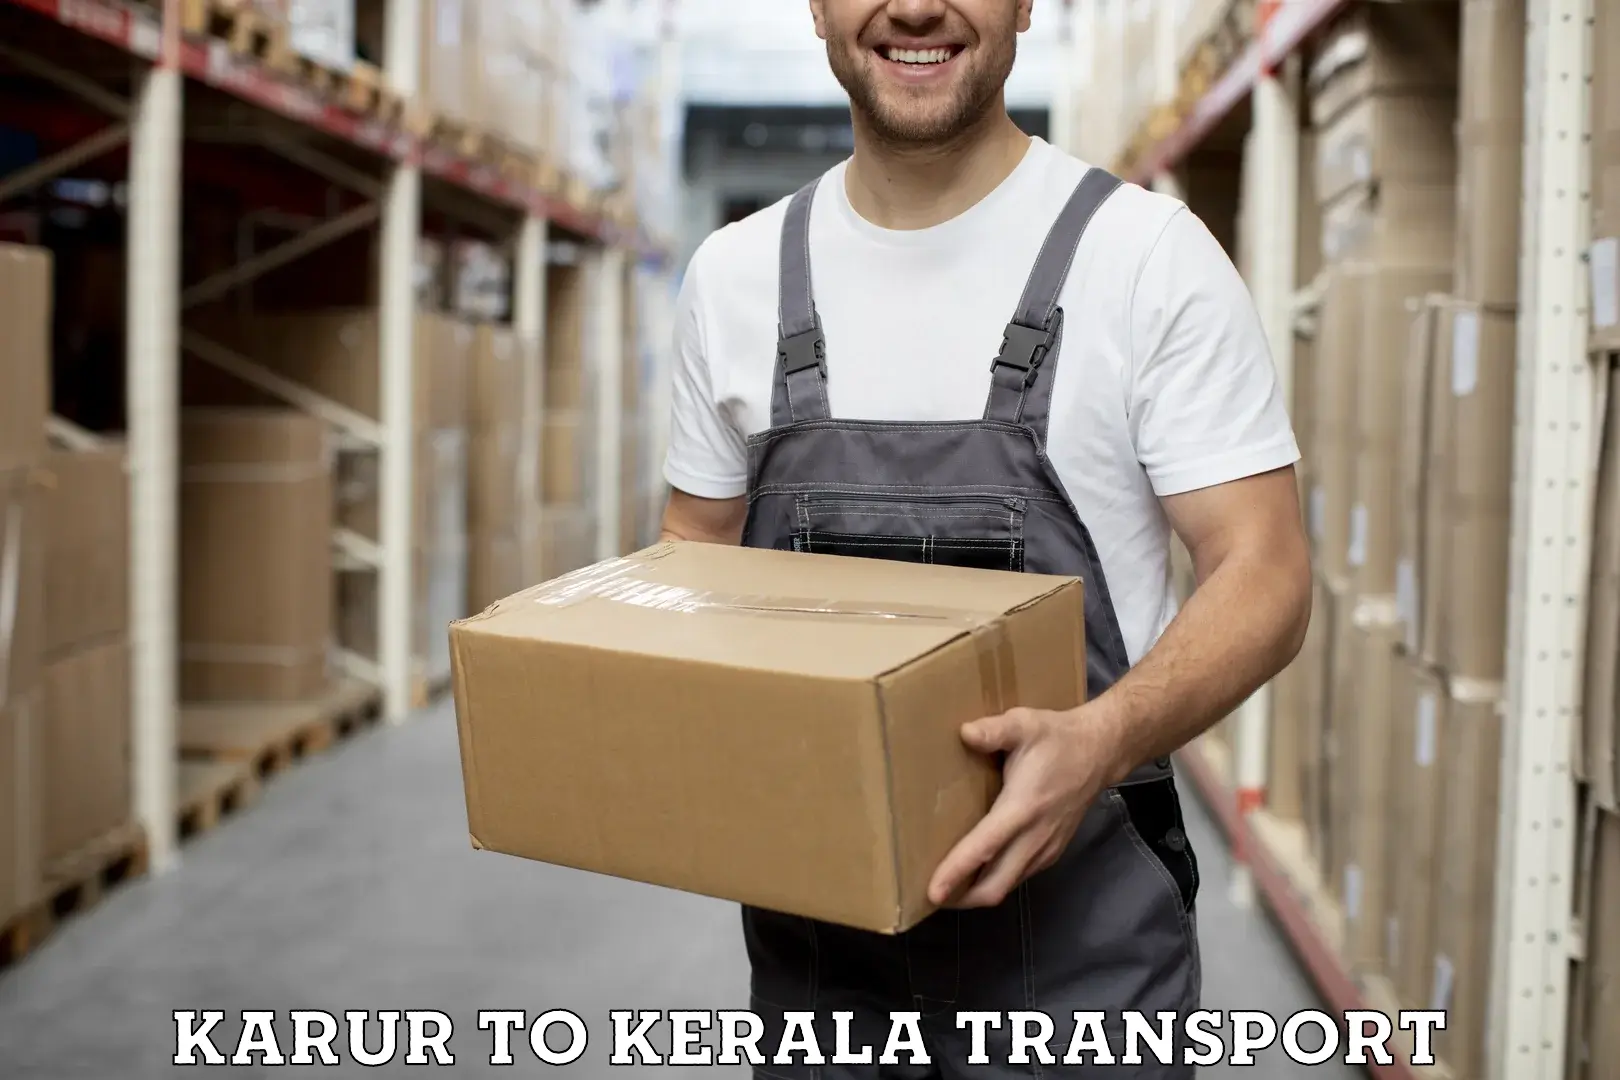 Vehicle parcel service Karur to Kasaragod